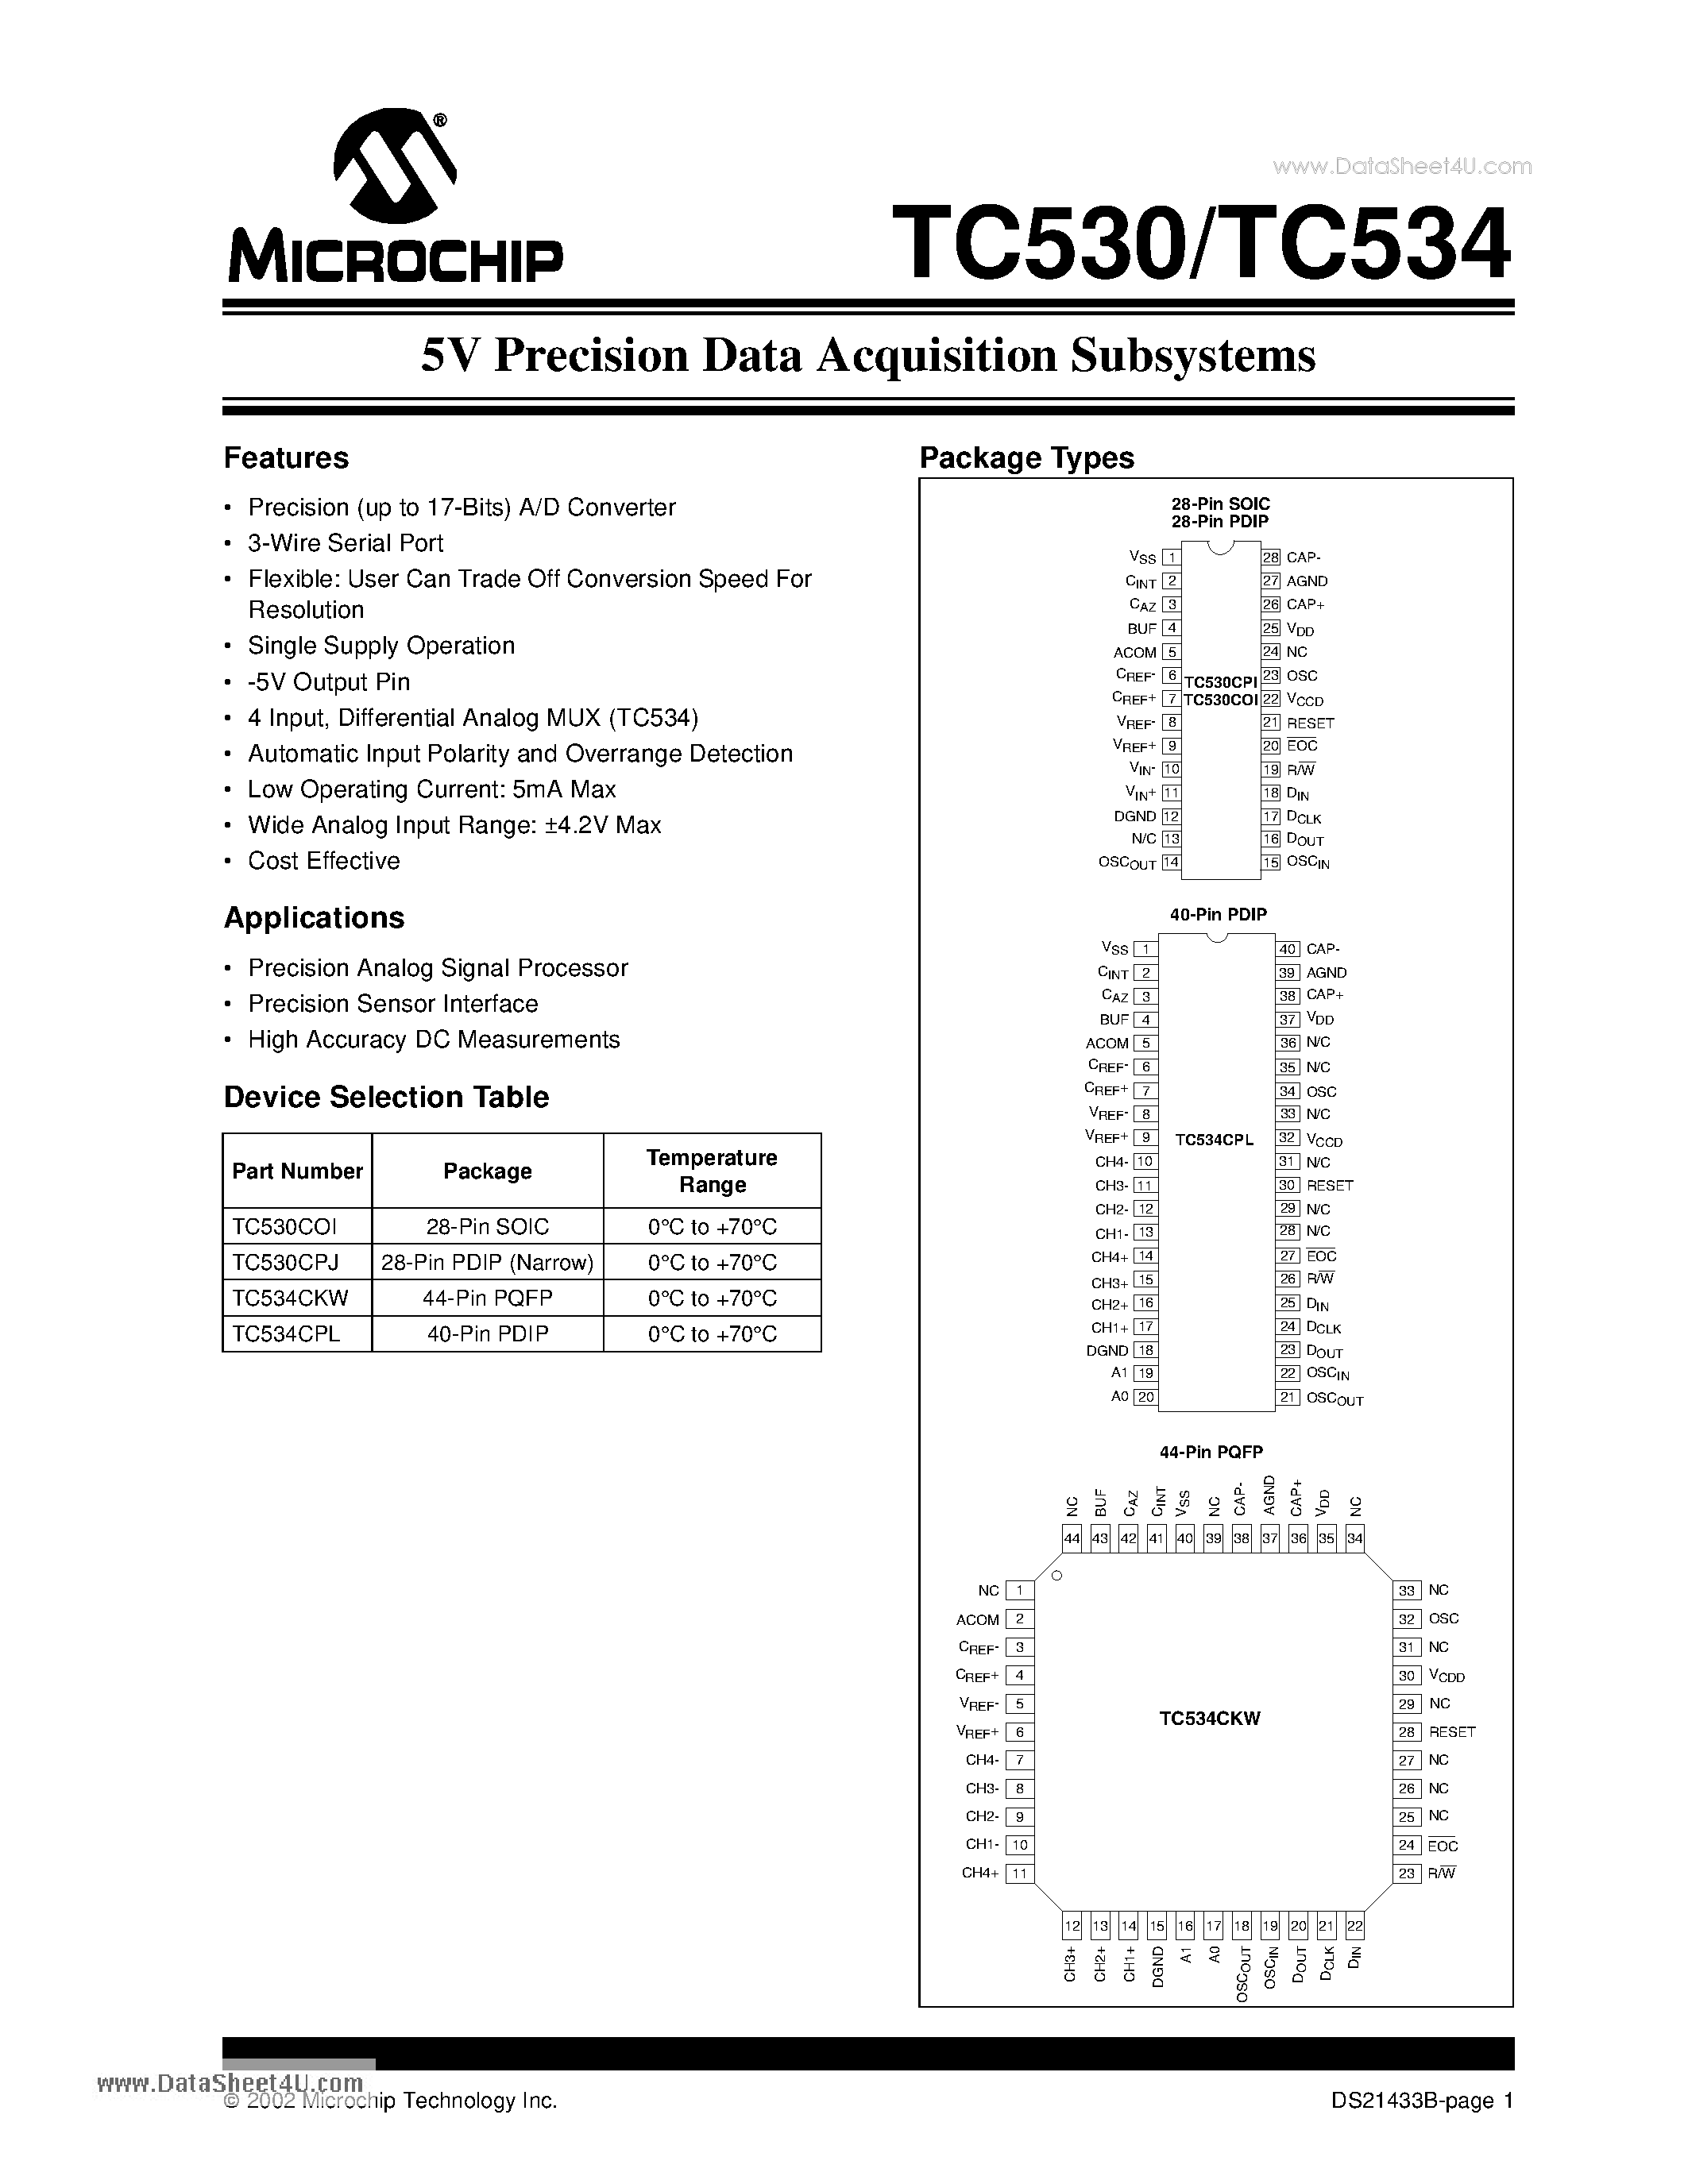 Даташит TC530 - (TC530 / TC534) 5V Precision Data Acquisition Subsystems страница 1